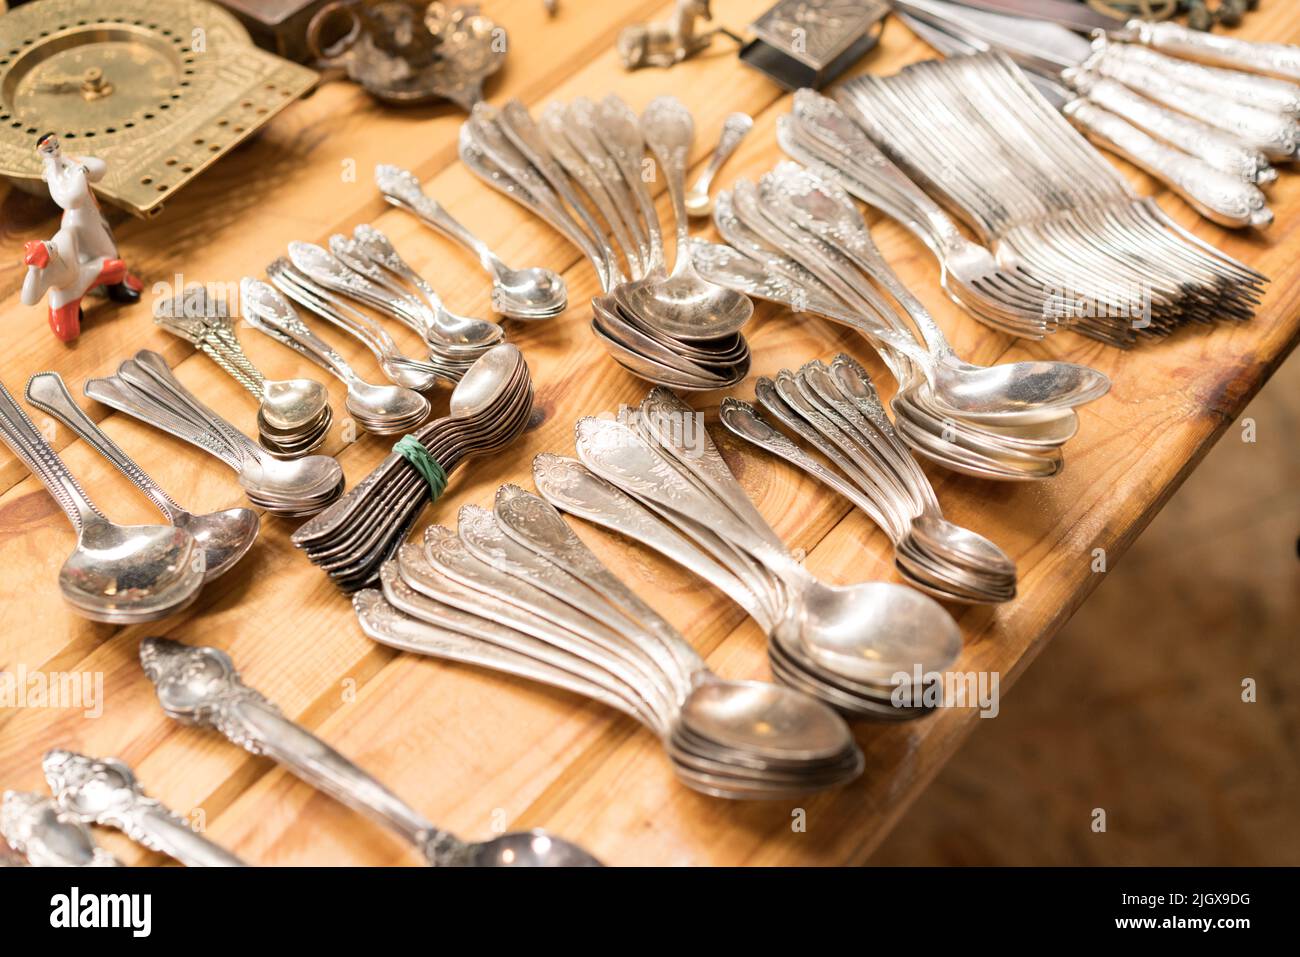 Antiquariato a mercato delle pulci o garage vendita, vecchie posate d'argento d'epoca - cucchiai, coltelli, forchette, e altre cose d'epoca. Oggetti da collezione, cimeli e ga Foto Stock